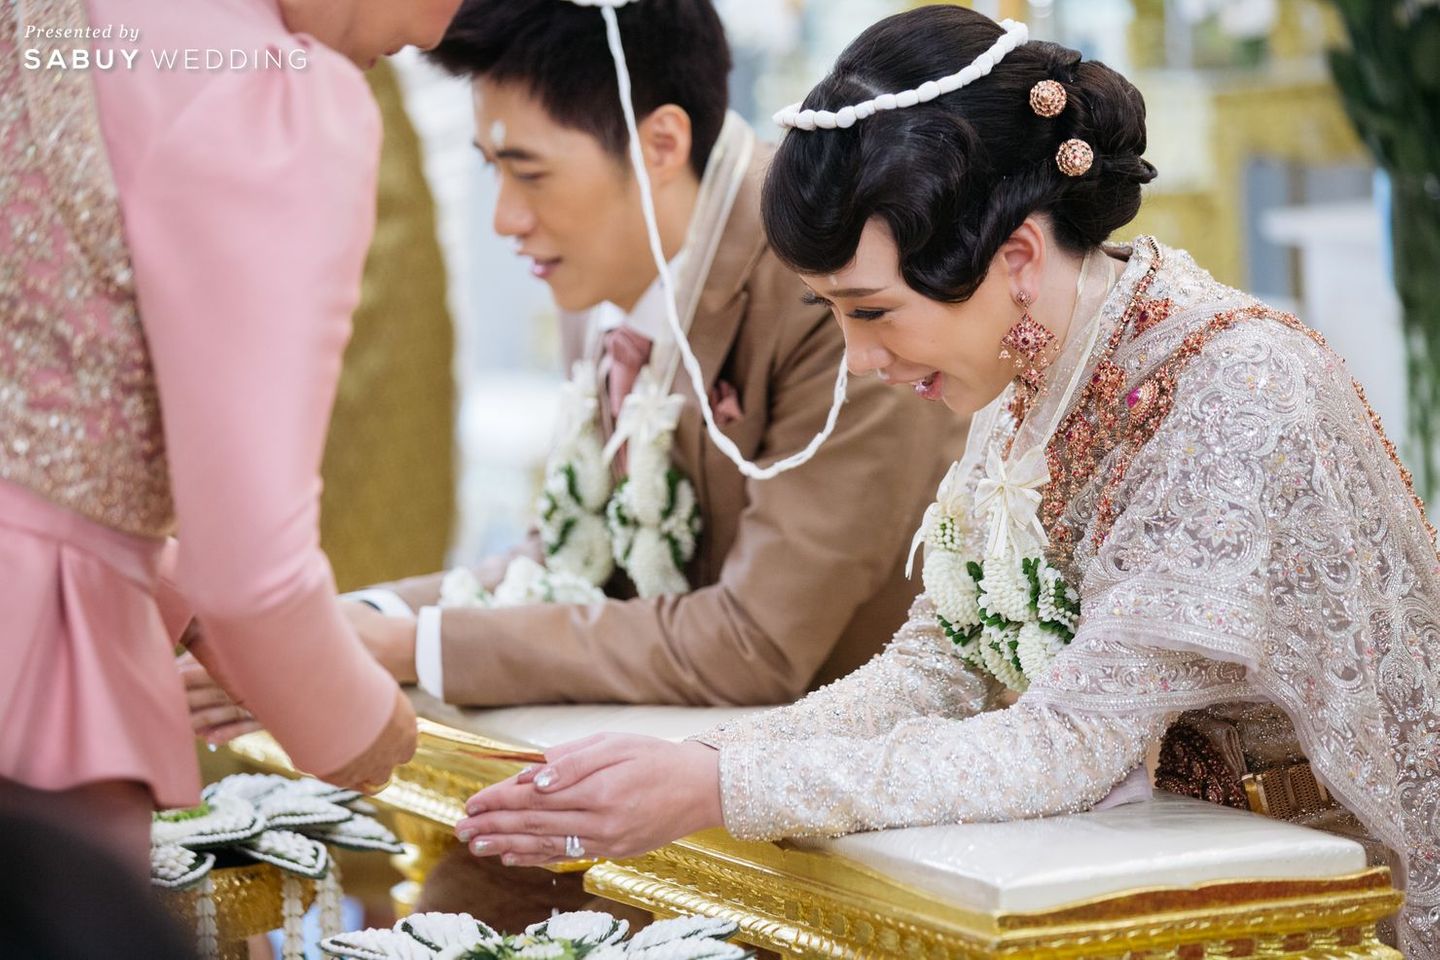 พิธีแต่งงาน,แต่งงาน,เจ้าบ่าว,เจ้าสาว รีวิวงานแต่งไทยประยุกต์ สวยคลาสสิกด้วยโทนขาวทอง @ The Berkeley Hotel Pratunam